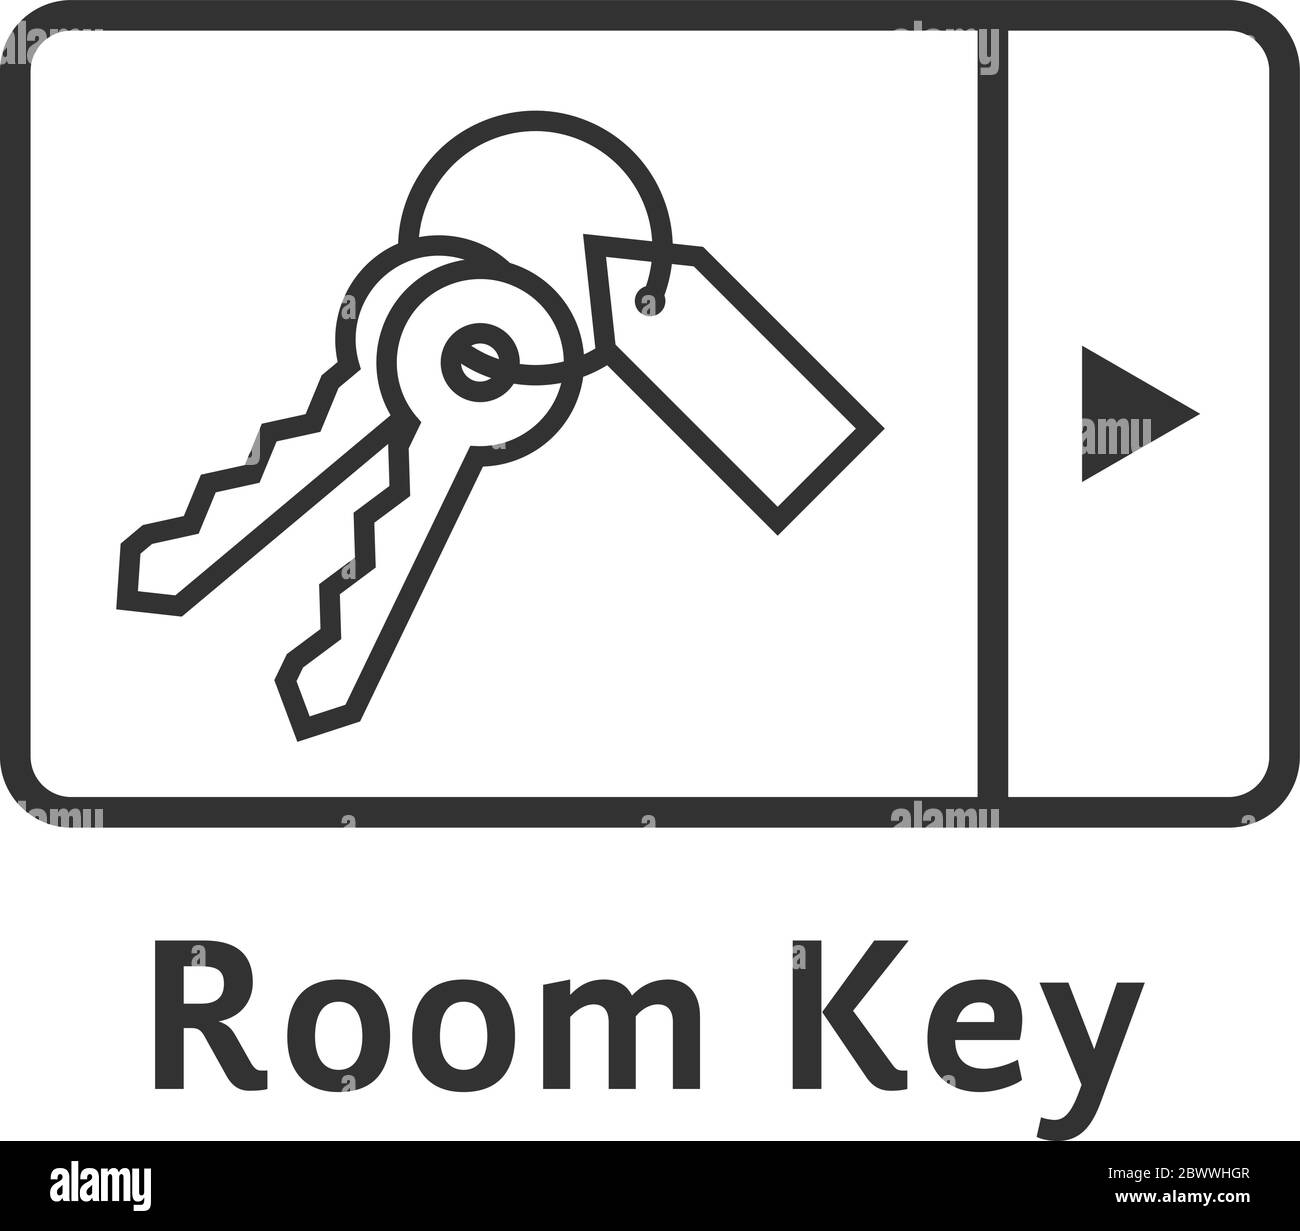 logo nero sottile della chiave digitale della stanza Illustrazione Vettoriale